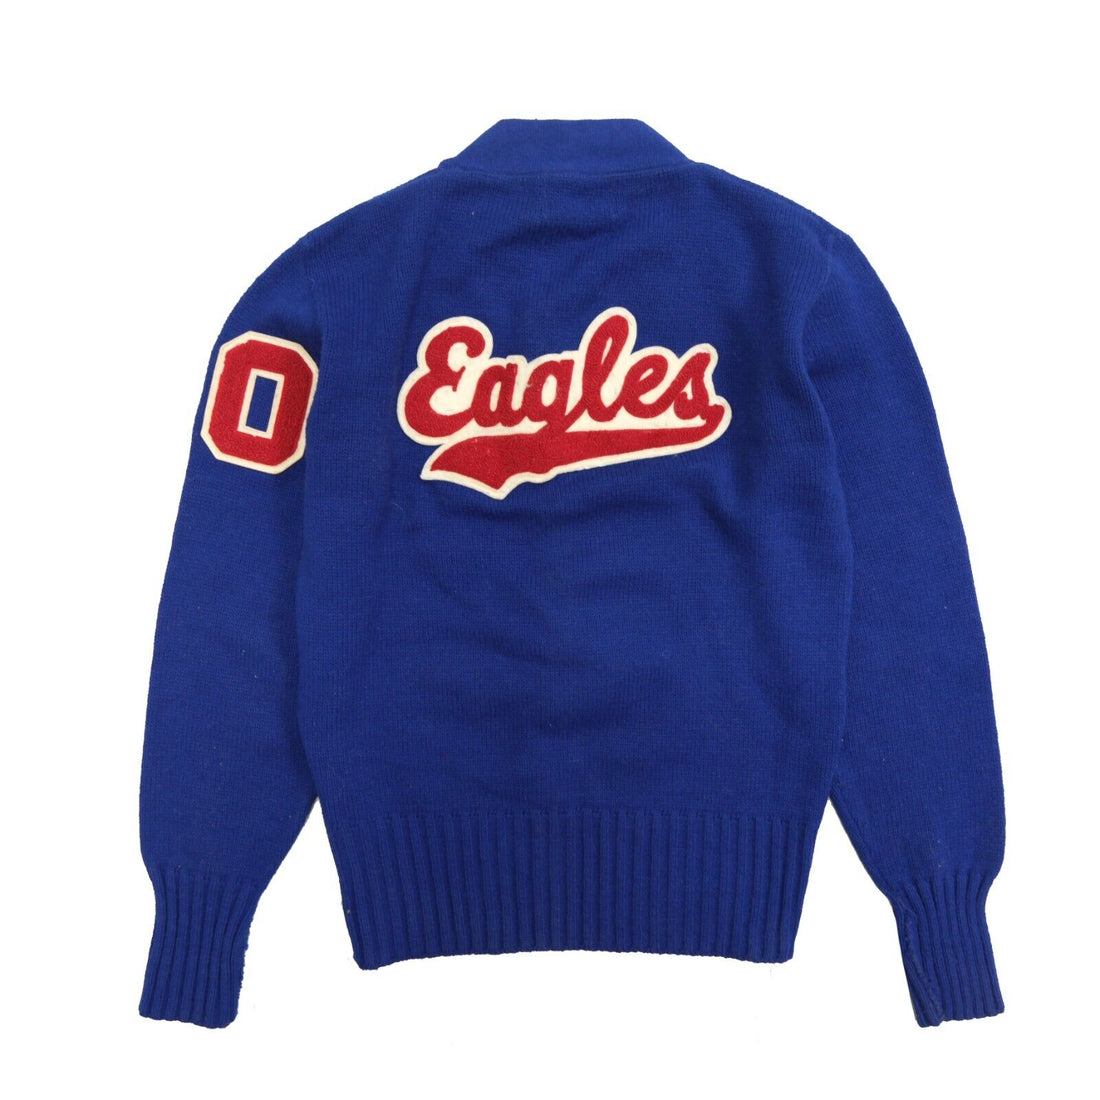 Vintage Eagles Letterman Knit V-Neck Sweater Size Medium Blue